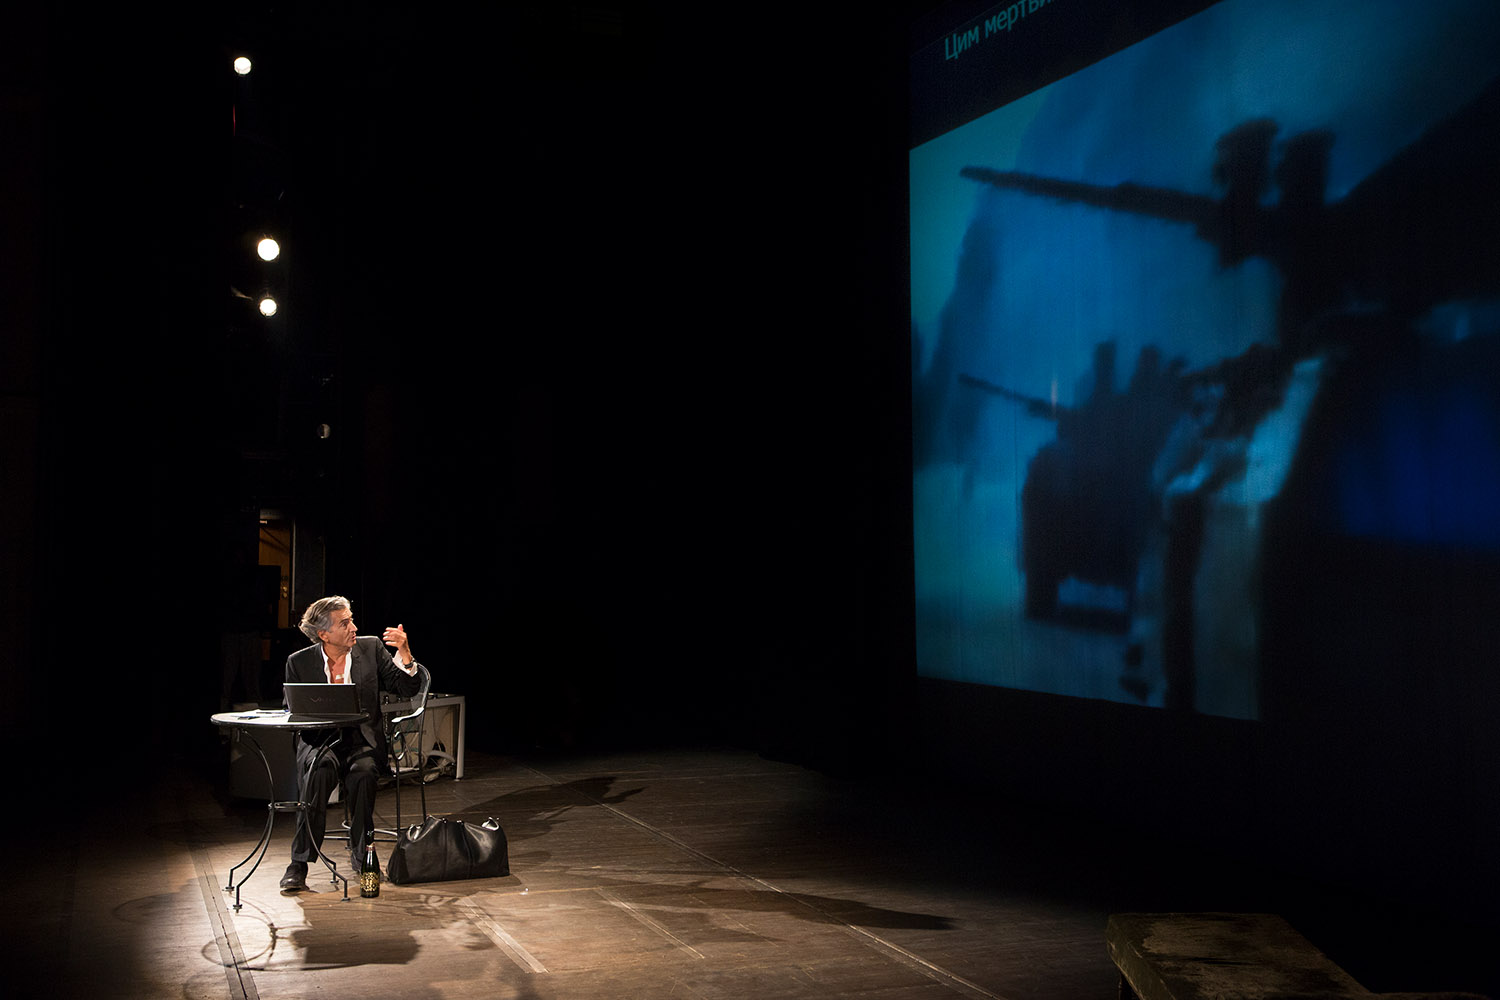 Bernard-Henri Lévy interprète sa pièce « Hôtel Europe » à l'Opéra d'Odessa. Il regarde, assis, le fond de la scène où est projeté des images de combats militaires avec des chars.